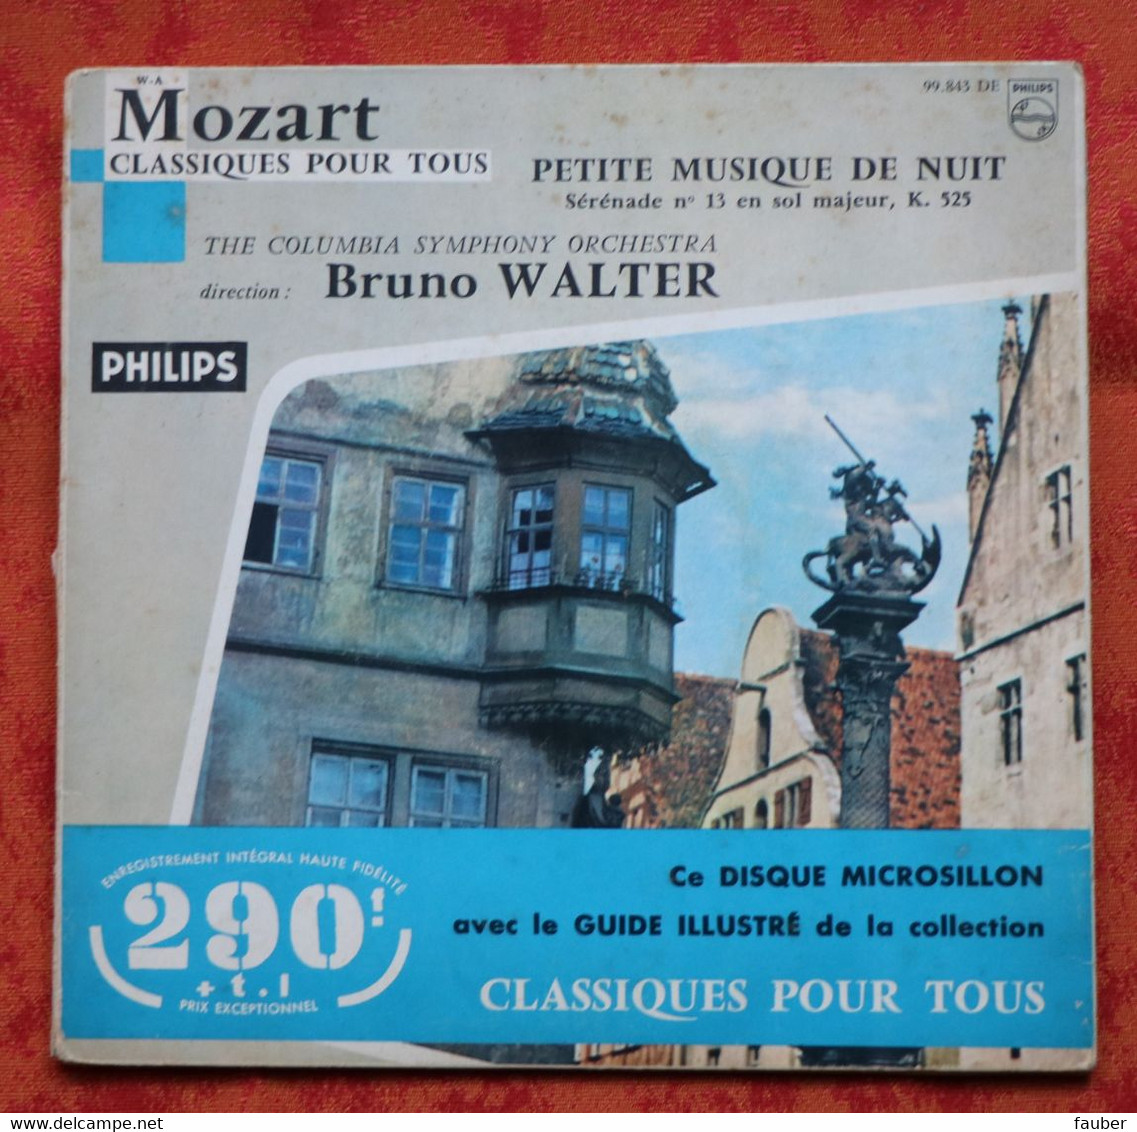 Mozart - Petite Musique De Nuit - Colombia Symphony Orchestra - Bruno Walter - Philips - Klassiekers